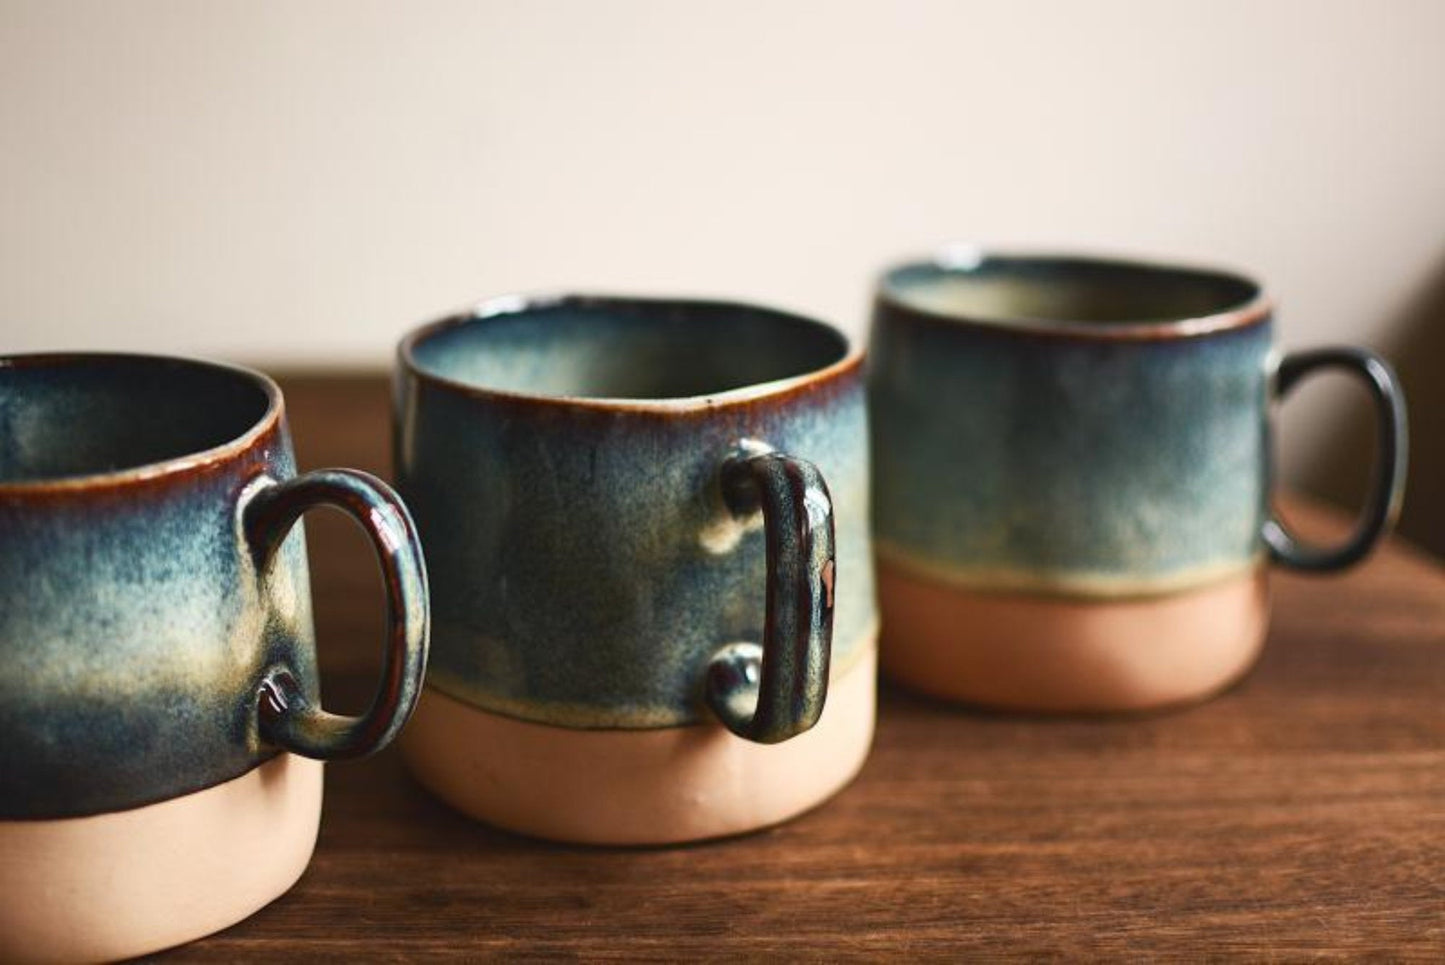 Reactive Glazed Pottery Mug 13.5oz | Latte Mug, Colorful Mug Set, Ceramics Modern Mug, Japanese Pottery Mug